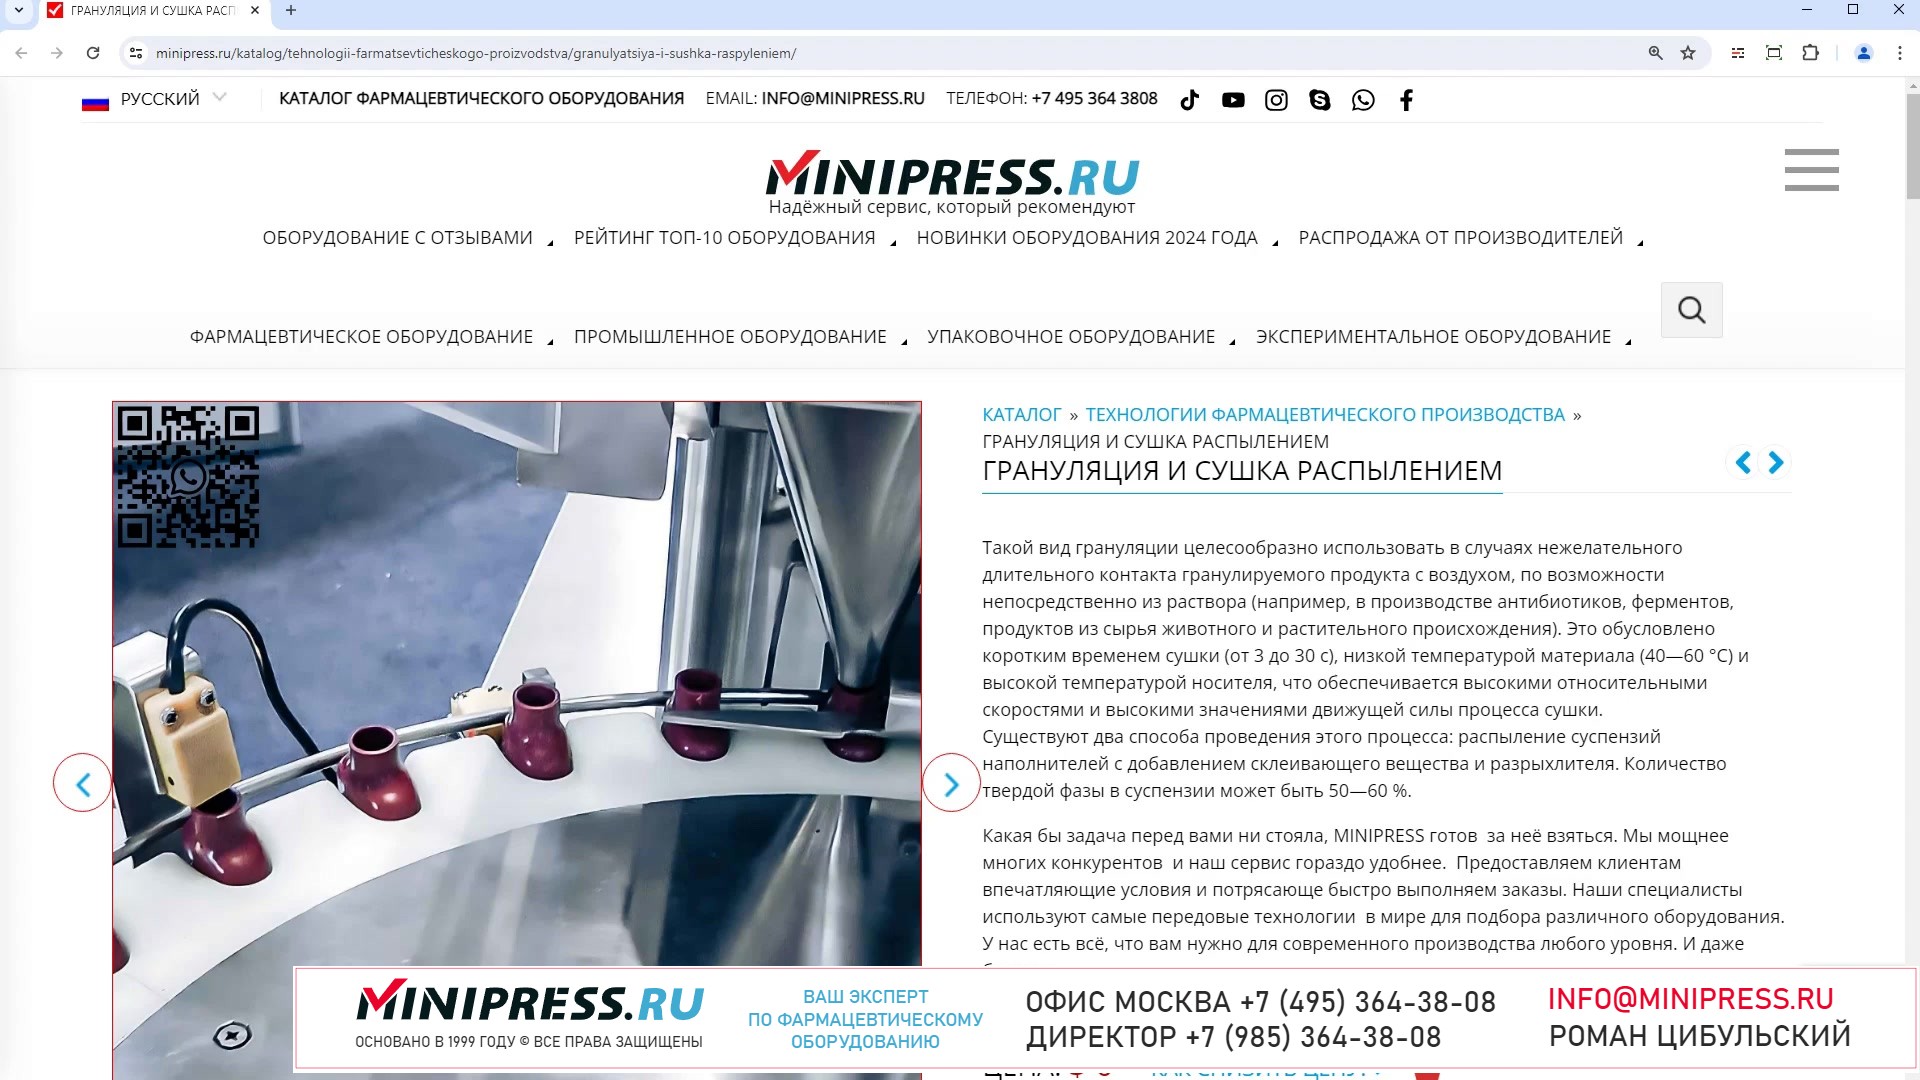 Minipress.ru Грануляция и сушка распылением